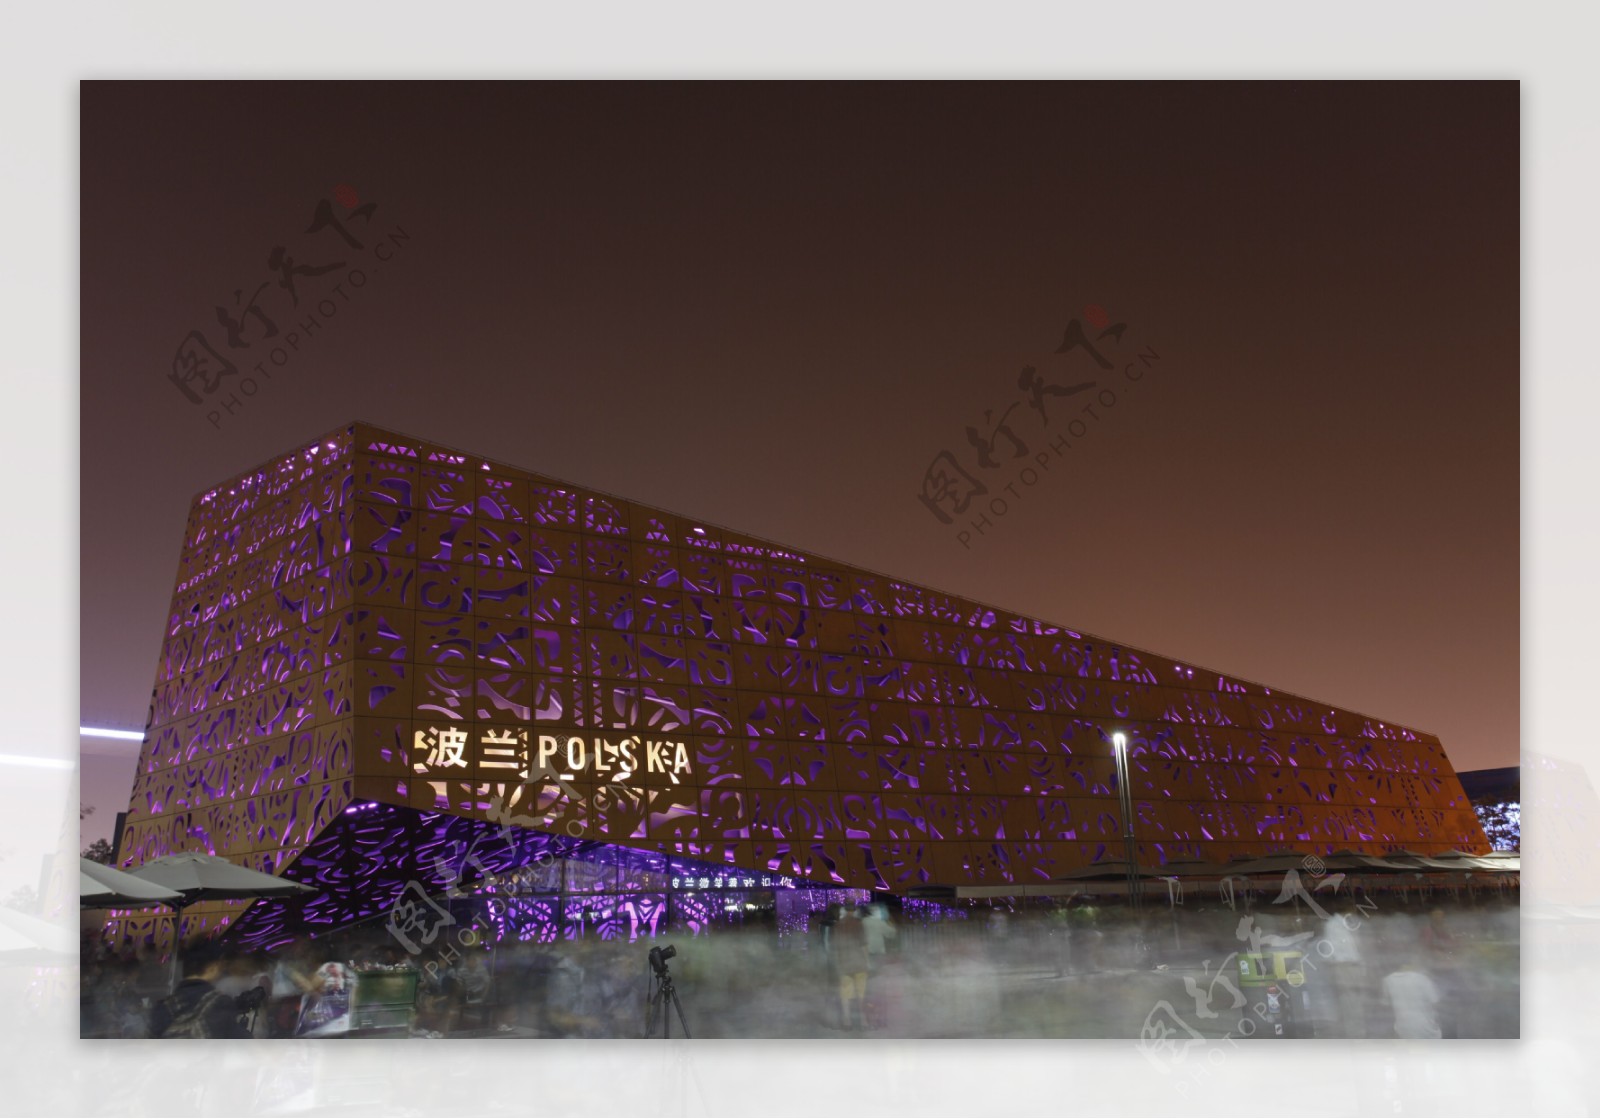 上海世博会波兰馆夜景照片图片